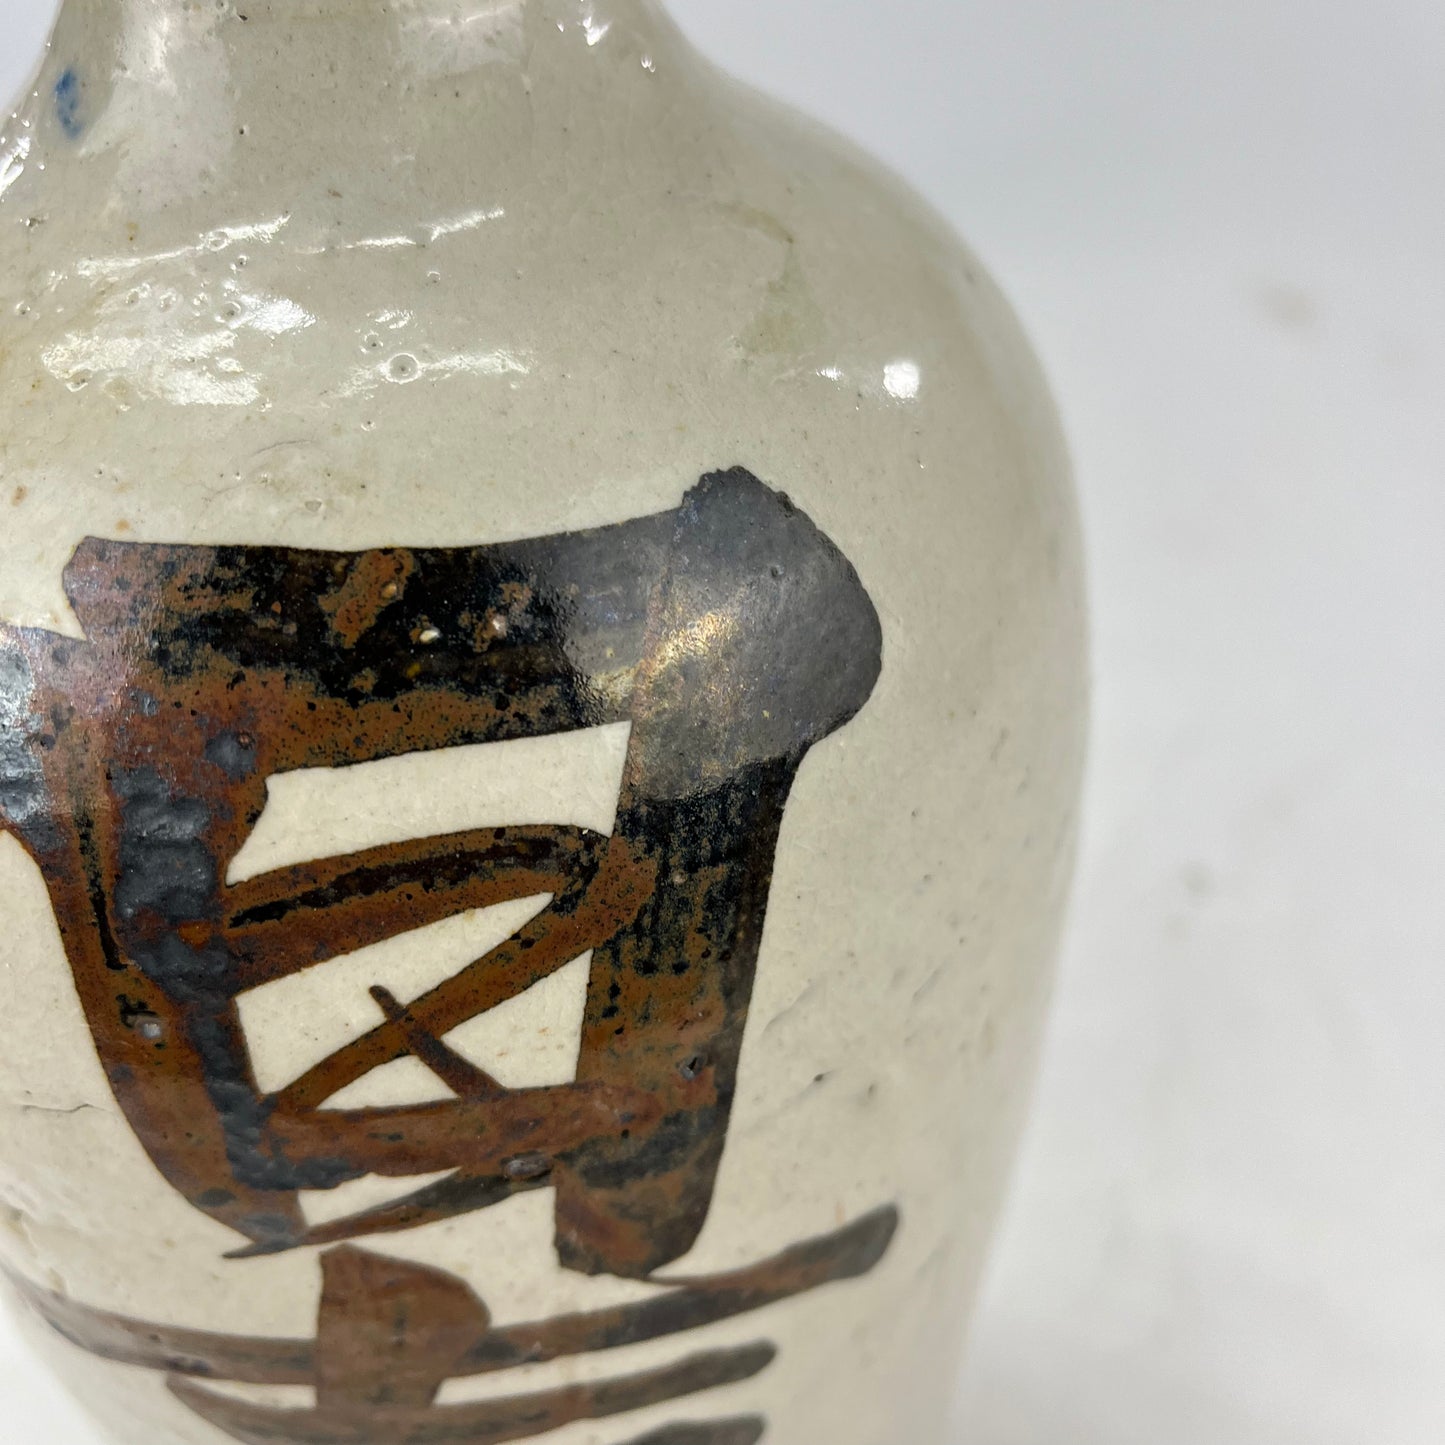 Antique Japanese (C.1900) Signed Tokkuri Sake Jug Sake Bottle / Vase 10"